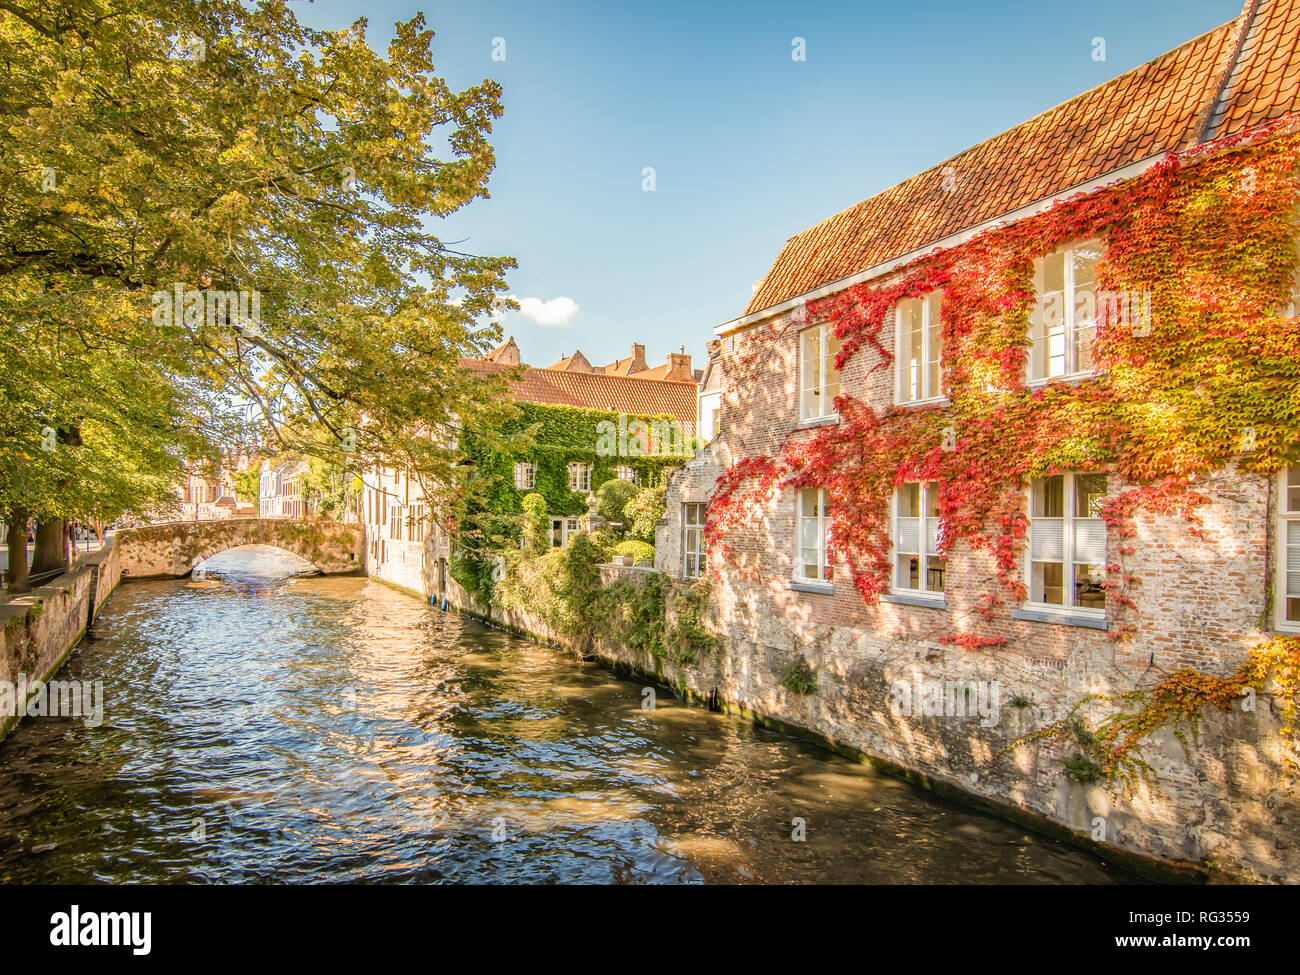 Cité médiévale et romantique Bonifacius pont et canal dans le centre-ville de Bruges, Belgique Banque D'Images